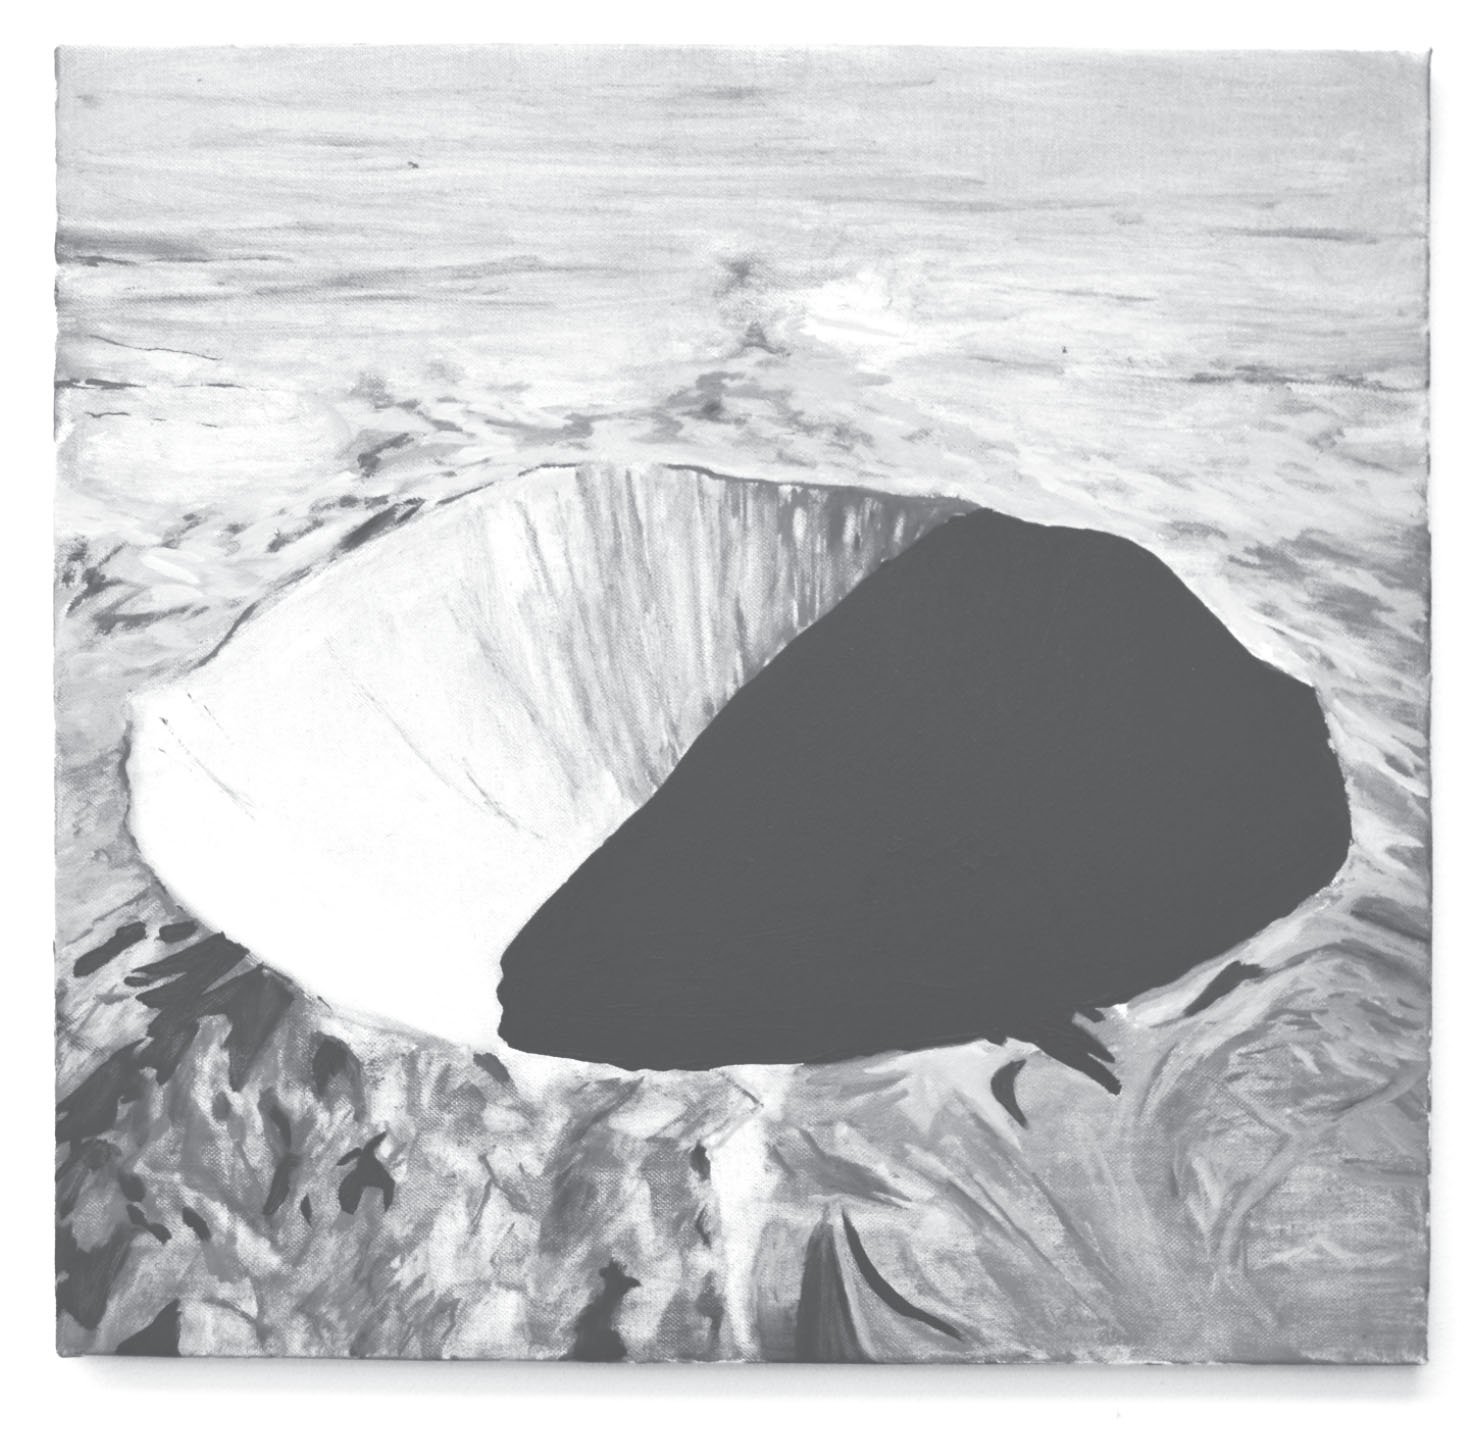 Illustration, en gråfärgad krater i kargt landskap